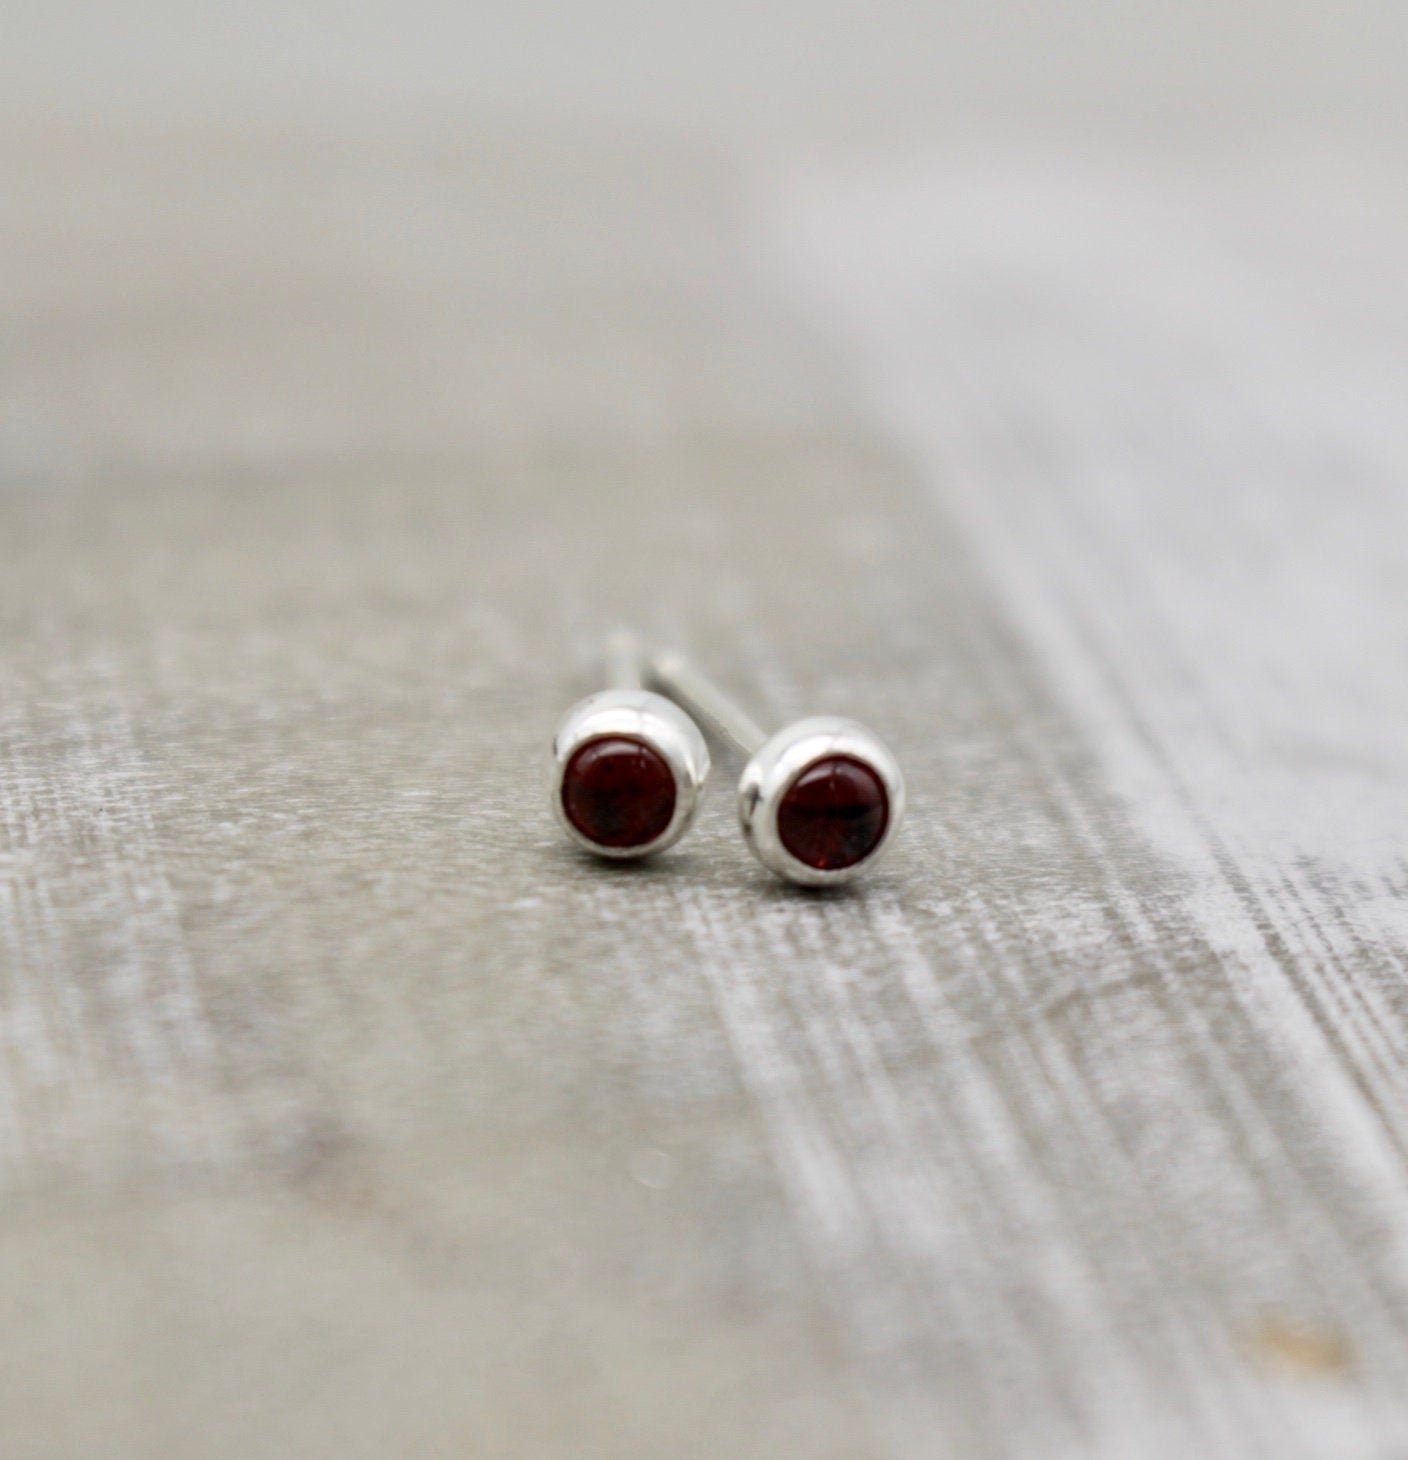 Petite garnet earrings - gift for her - 3mm stud earrings - January birthstone earrings - jewelry sale